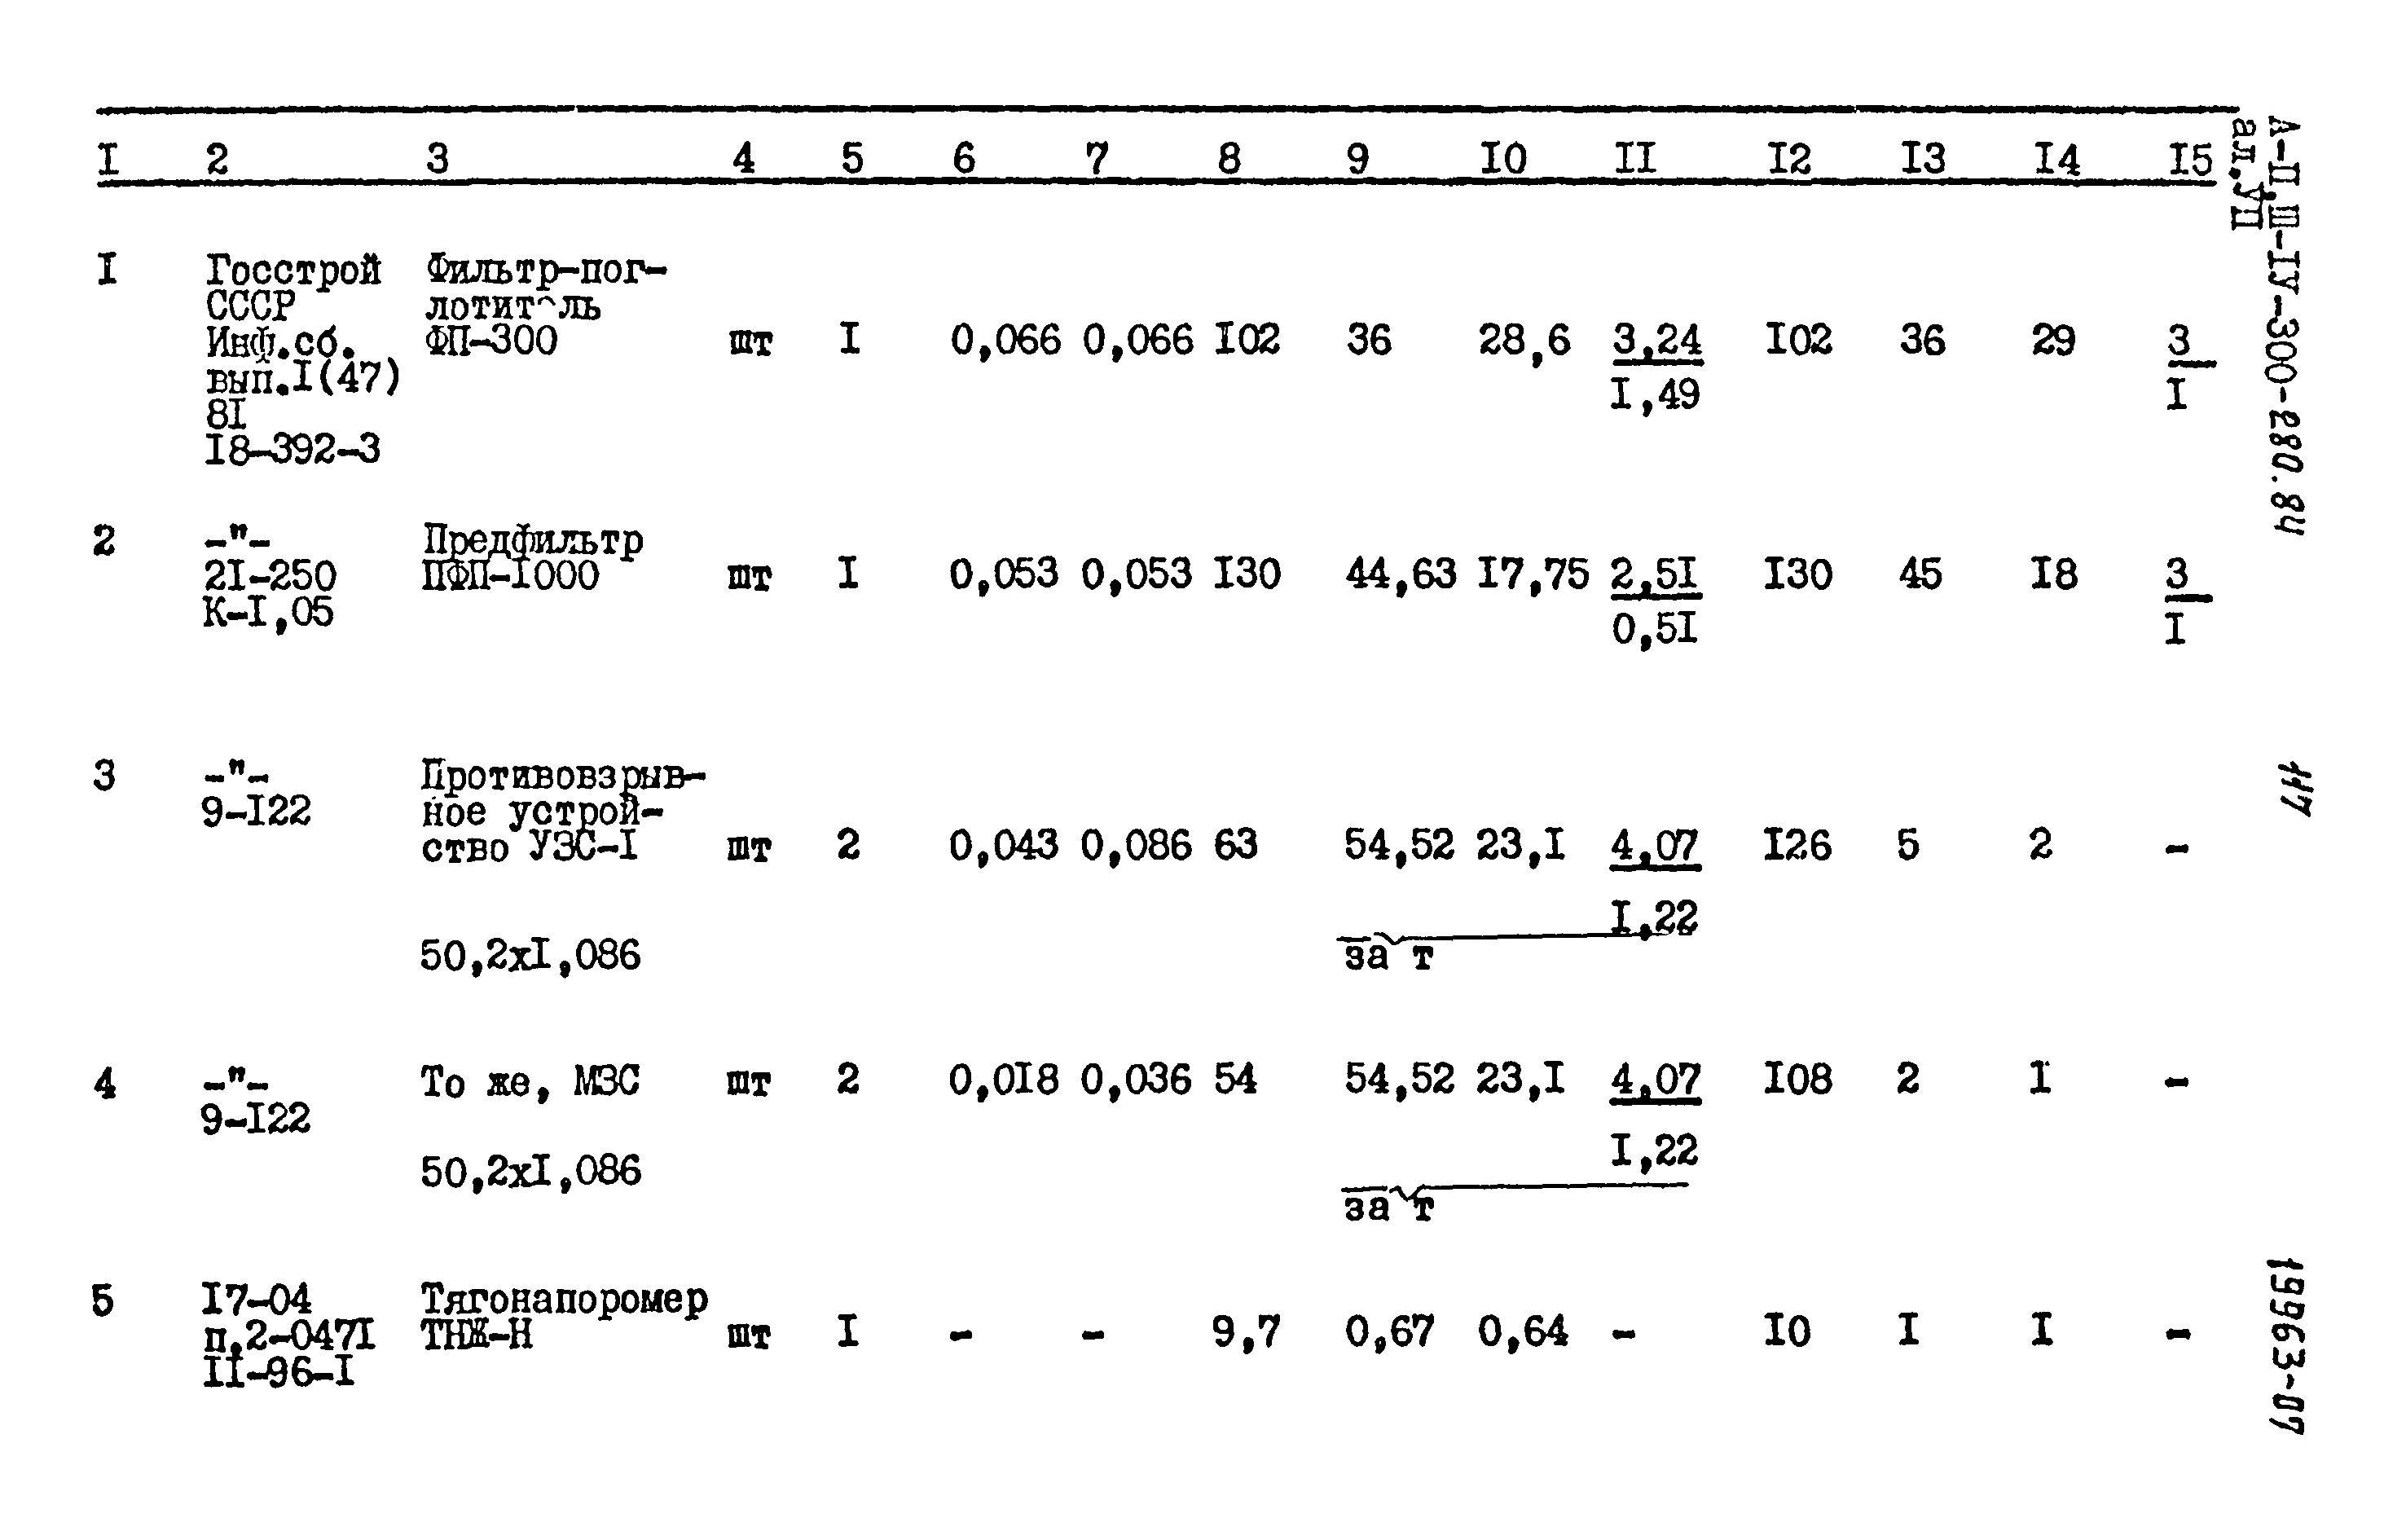 Типовой проект А-II,III,IV-300-280.84